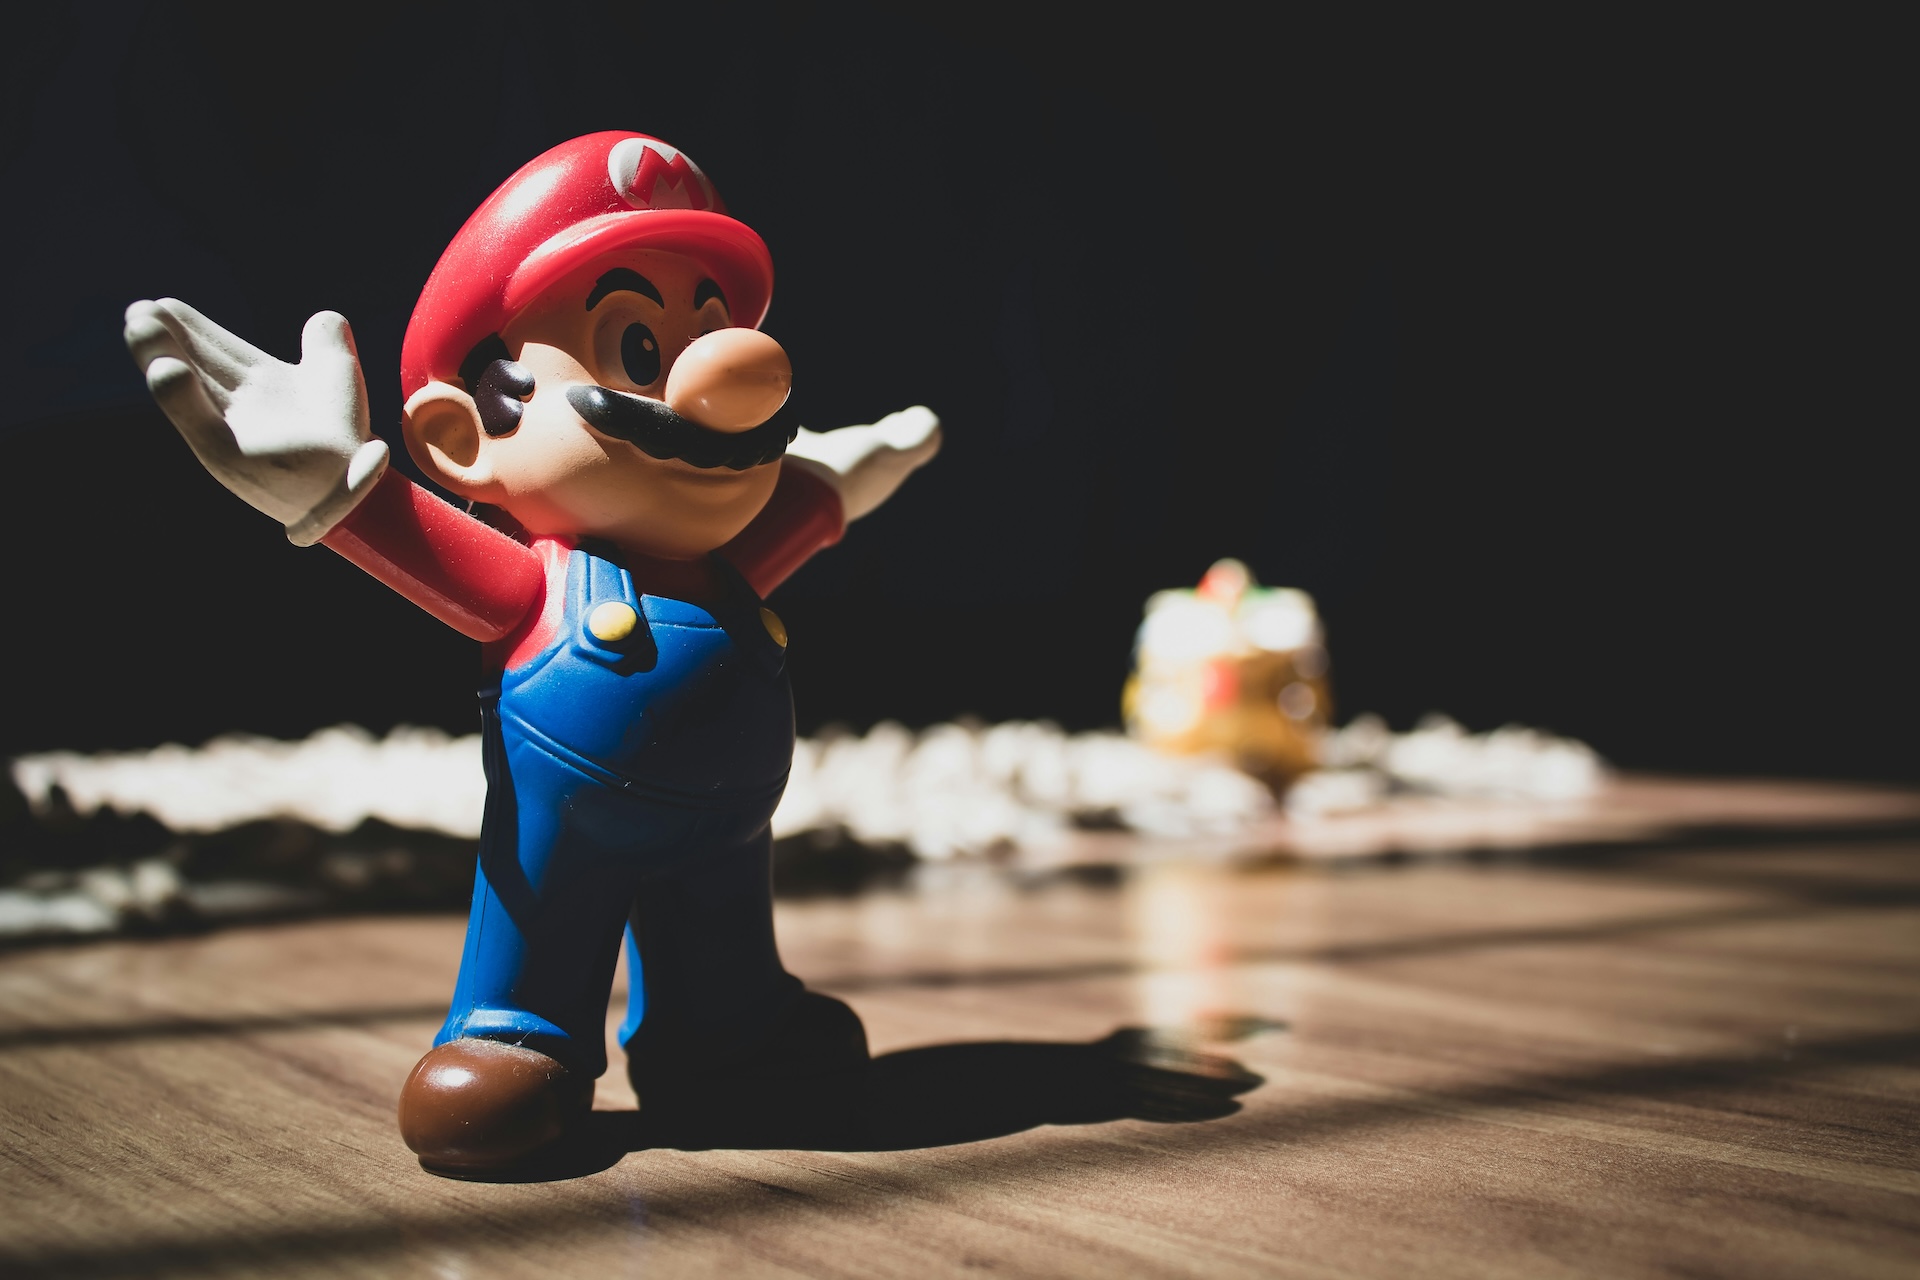 Spielfigur Mario als Repräsentation für Spielen